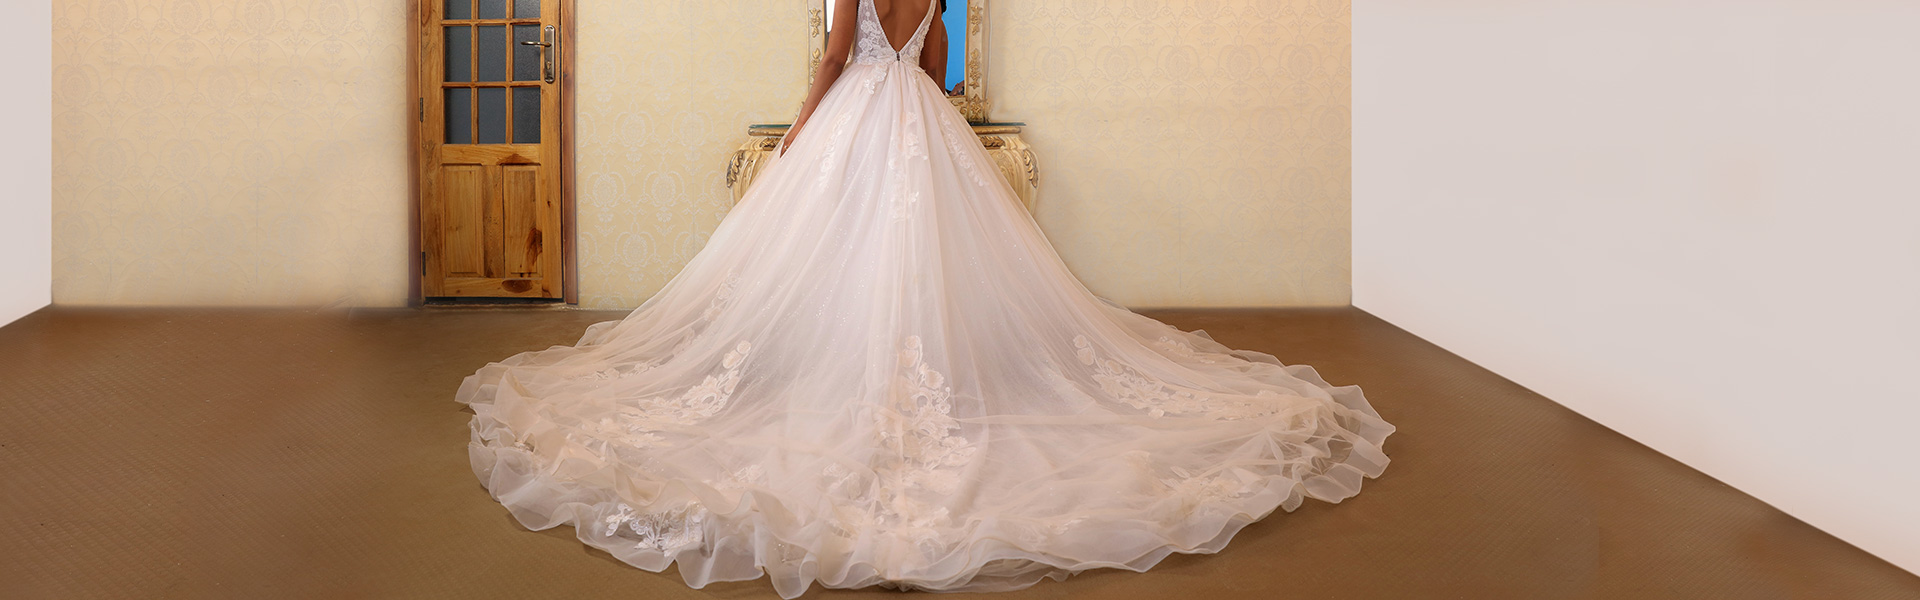 Bride in long dress looking into mirror